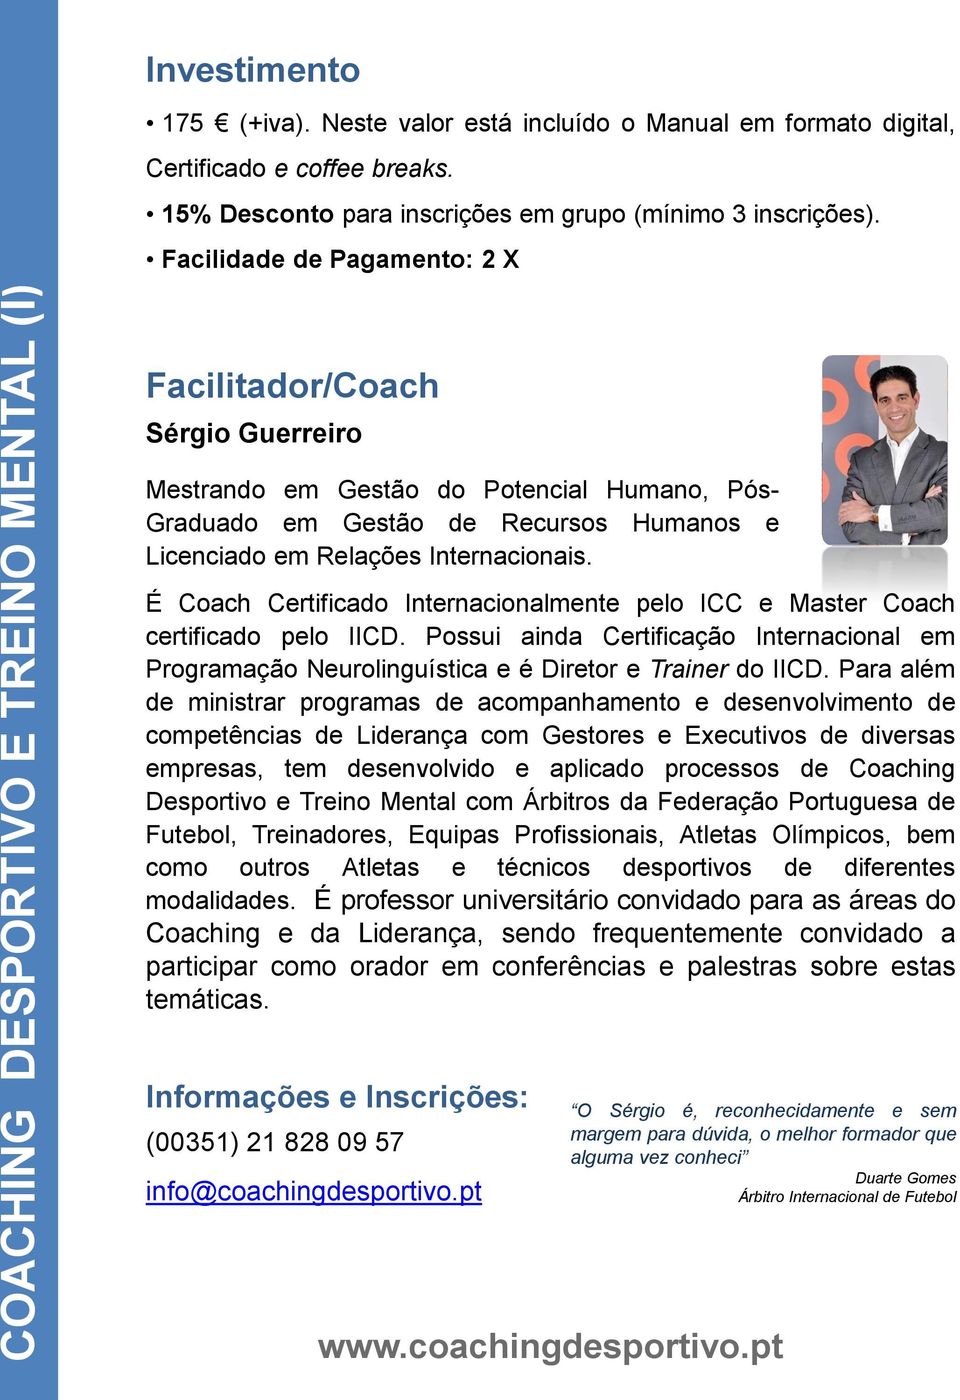 É Coach Certificado Internacionalmente pelo ICC e Master Coach certificado pelo IICD. Possui ainda Certificação Internacional em Programação Neurolinguística e é Diretor e Trainer do IICD.